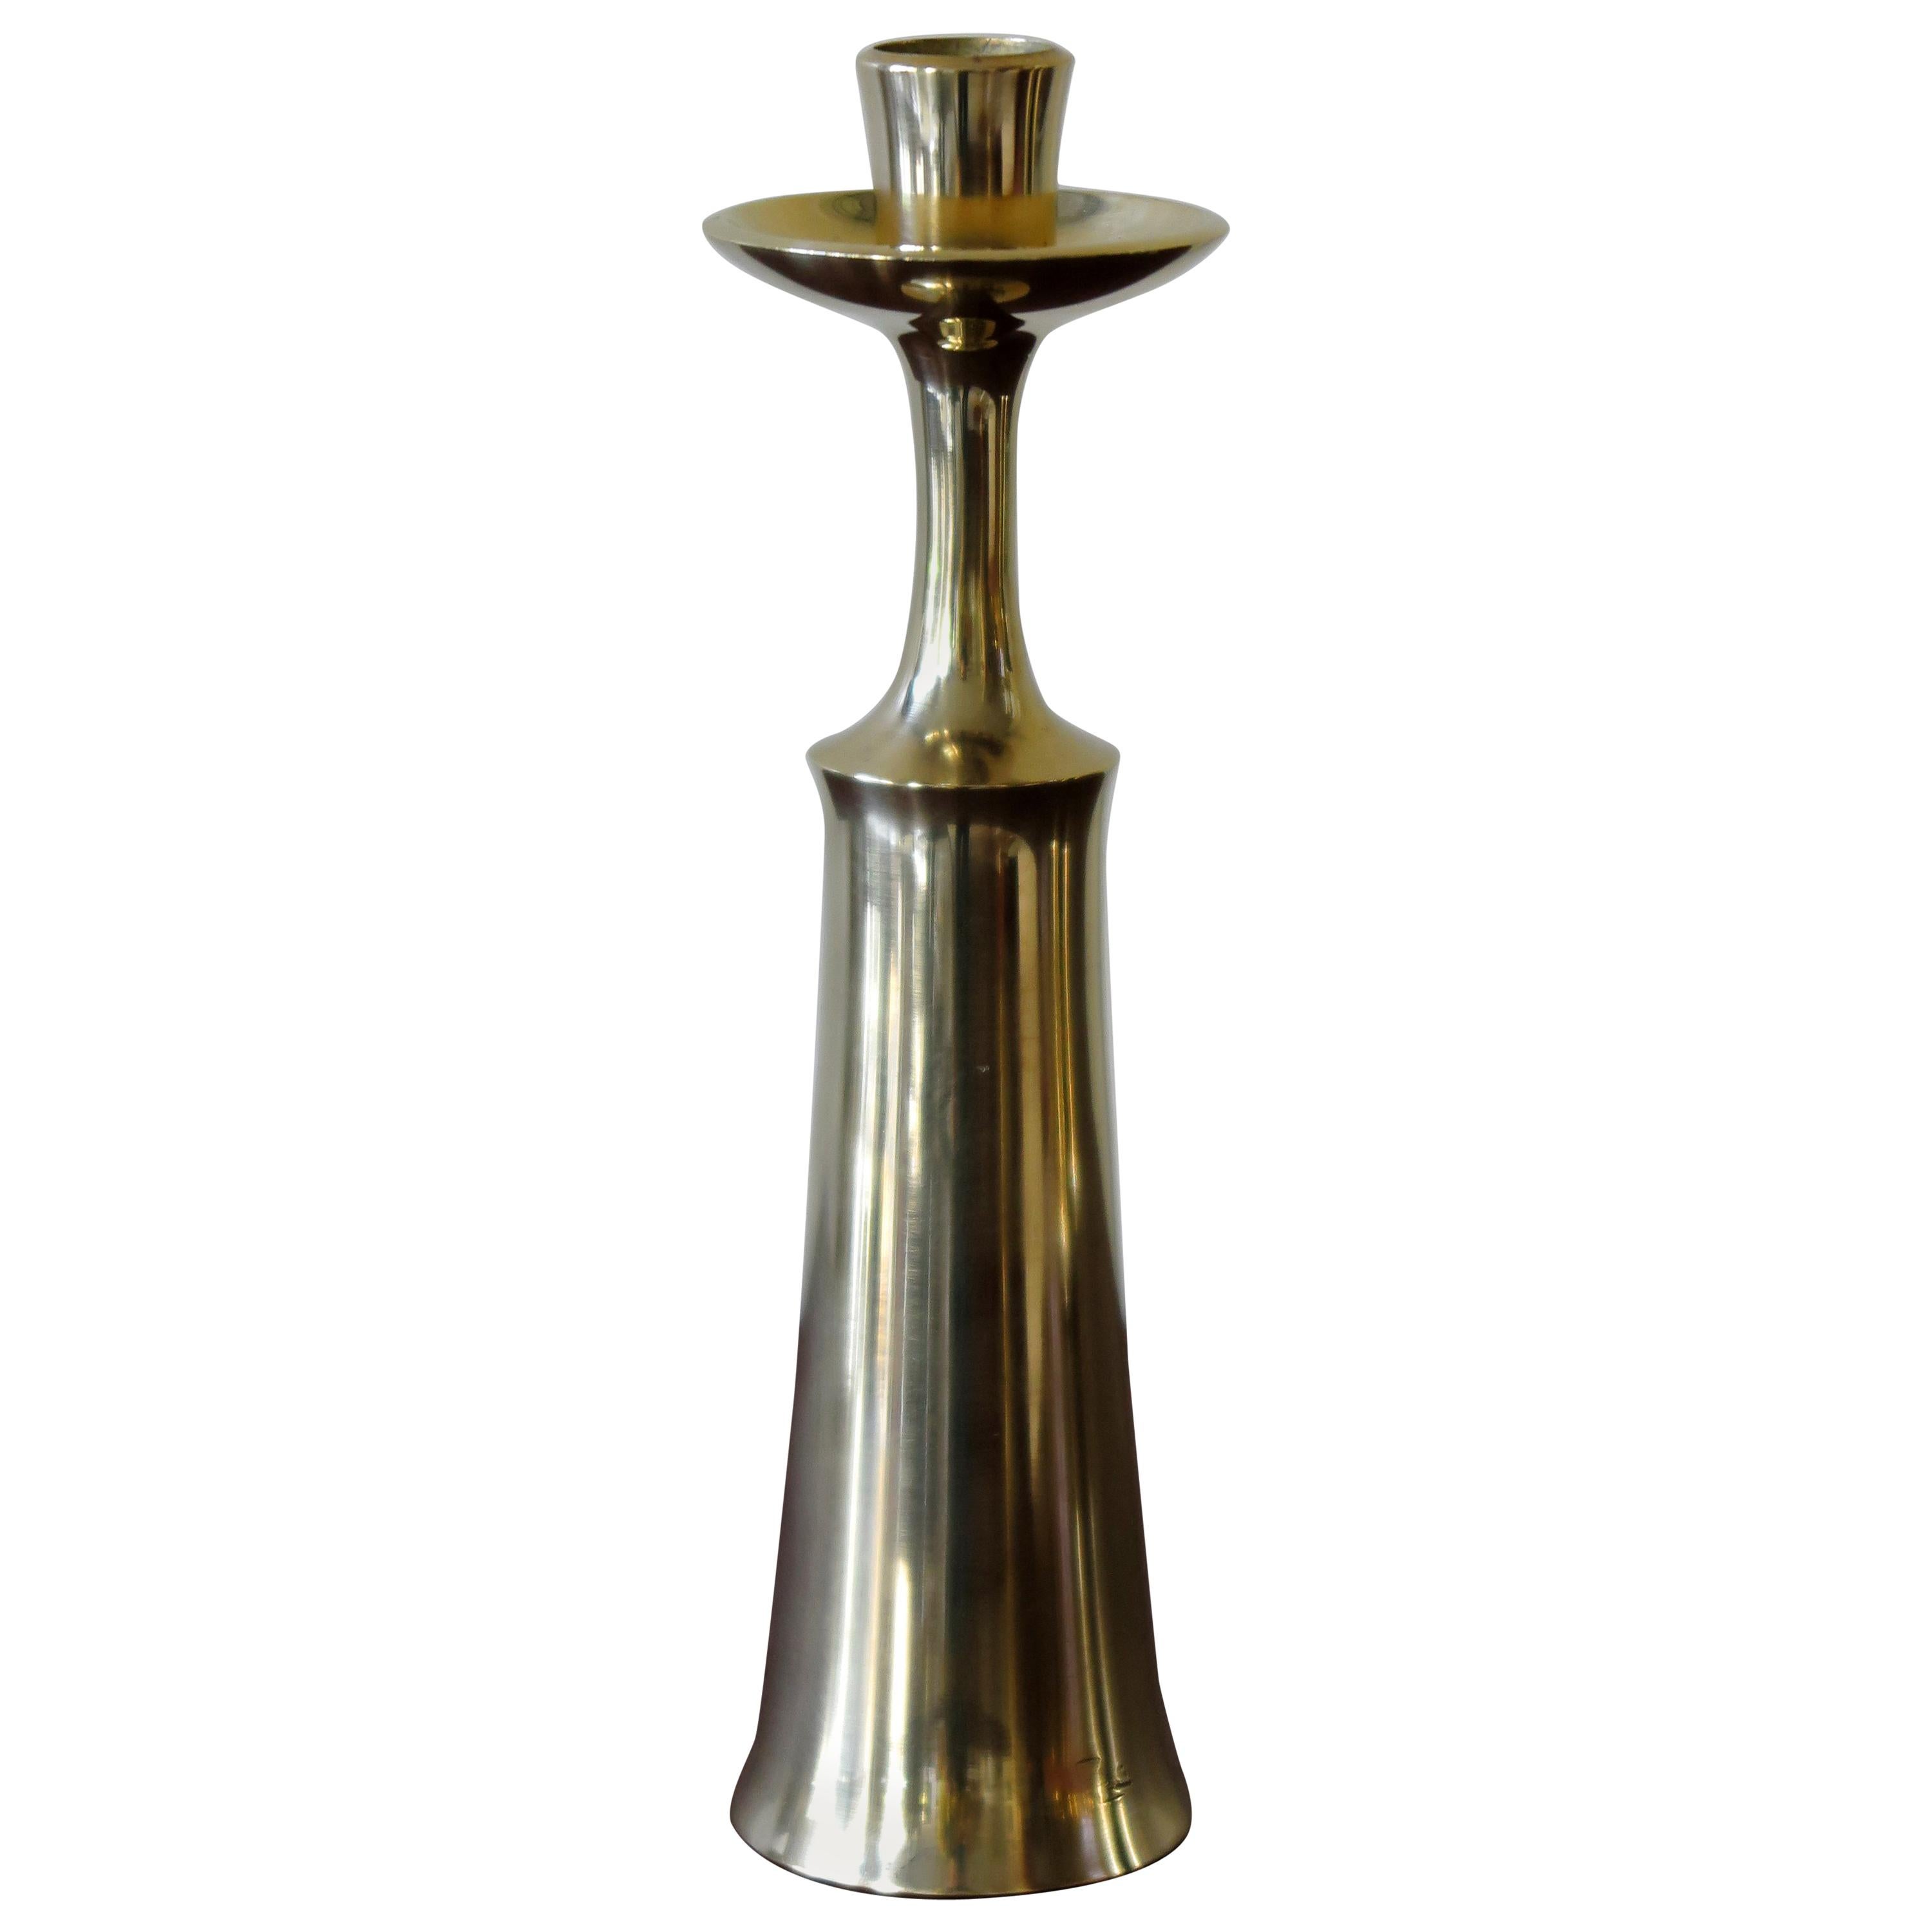 Jens Harald Quistgaard Scandinavian Brass Candlestick for Dansk Design, 1950s